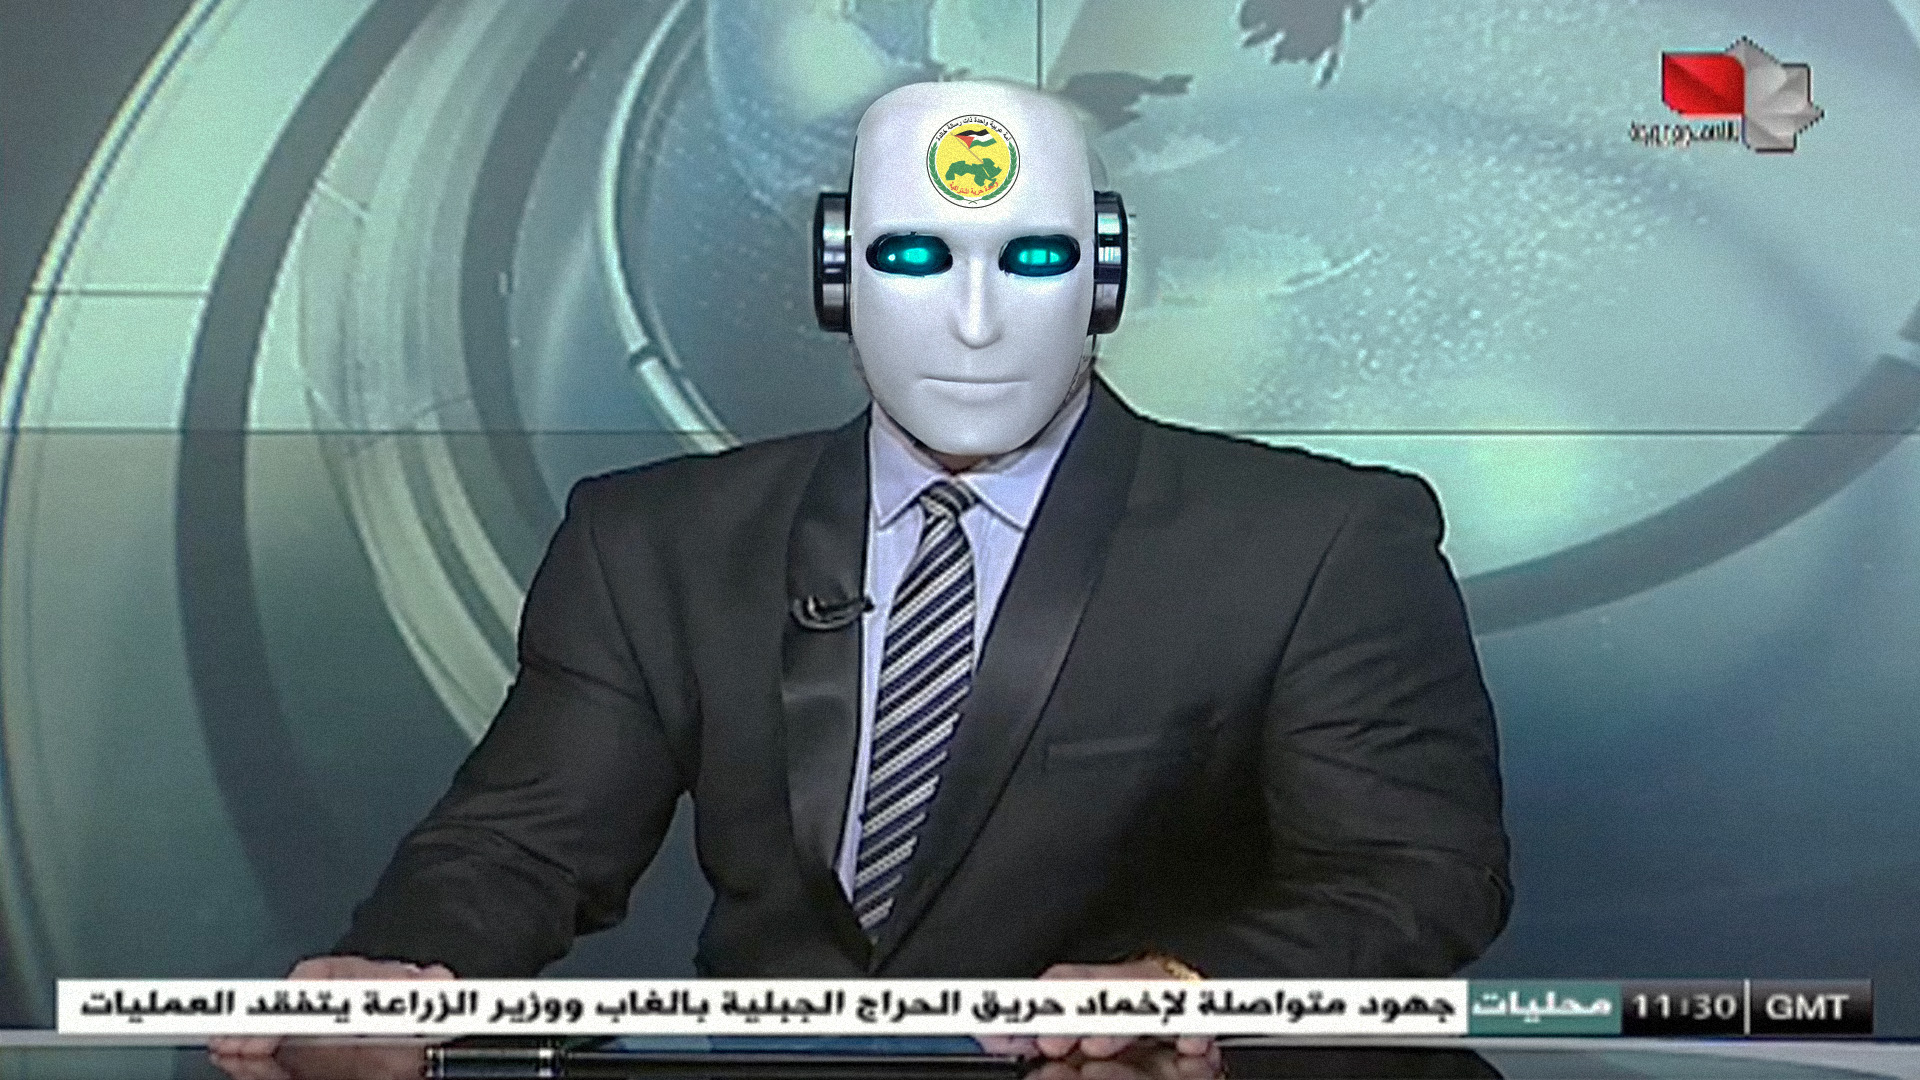 صورة الفضائية السورية توظف مذيعاً يعمل بتقنية الذكاء الاصطناعي بعد اجتيازه دورة إعداد حزبي